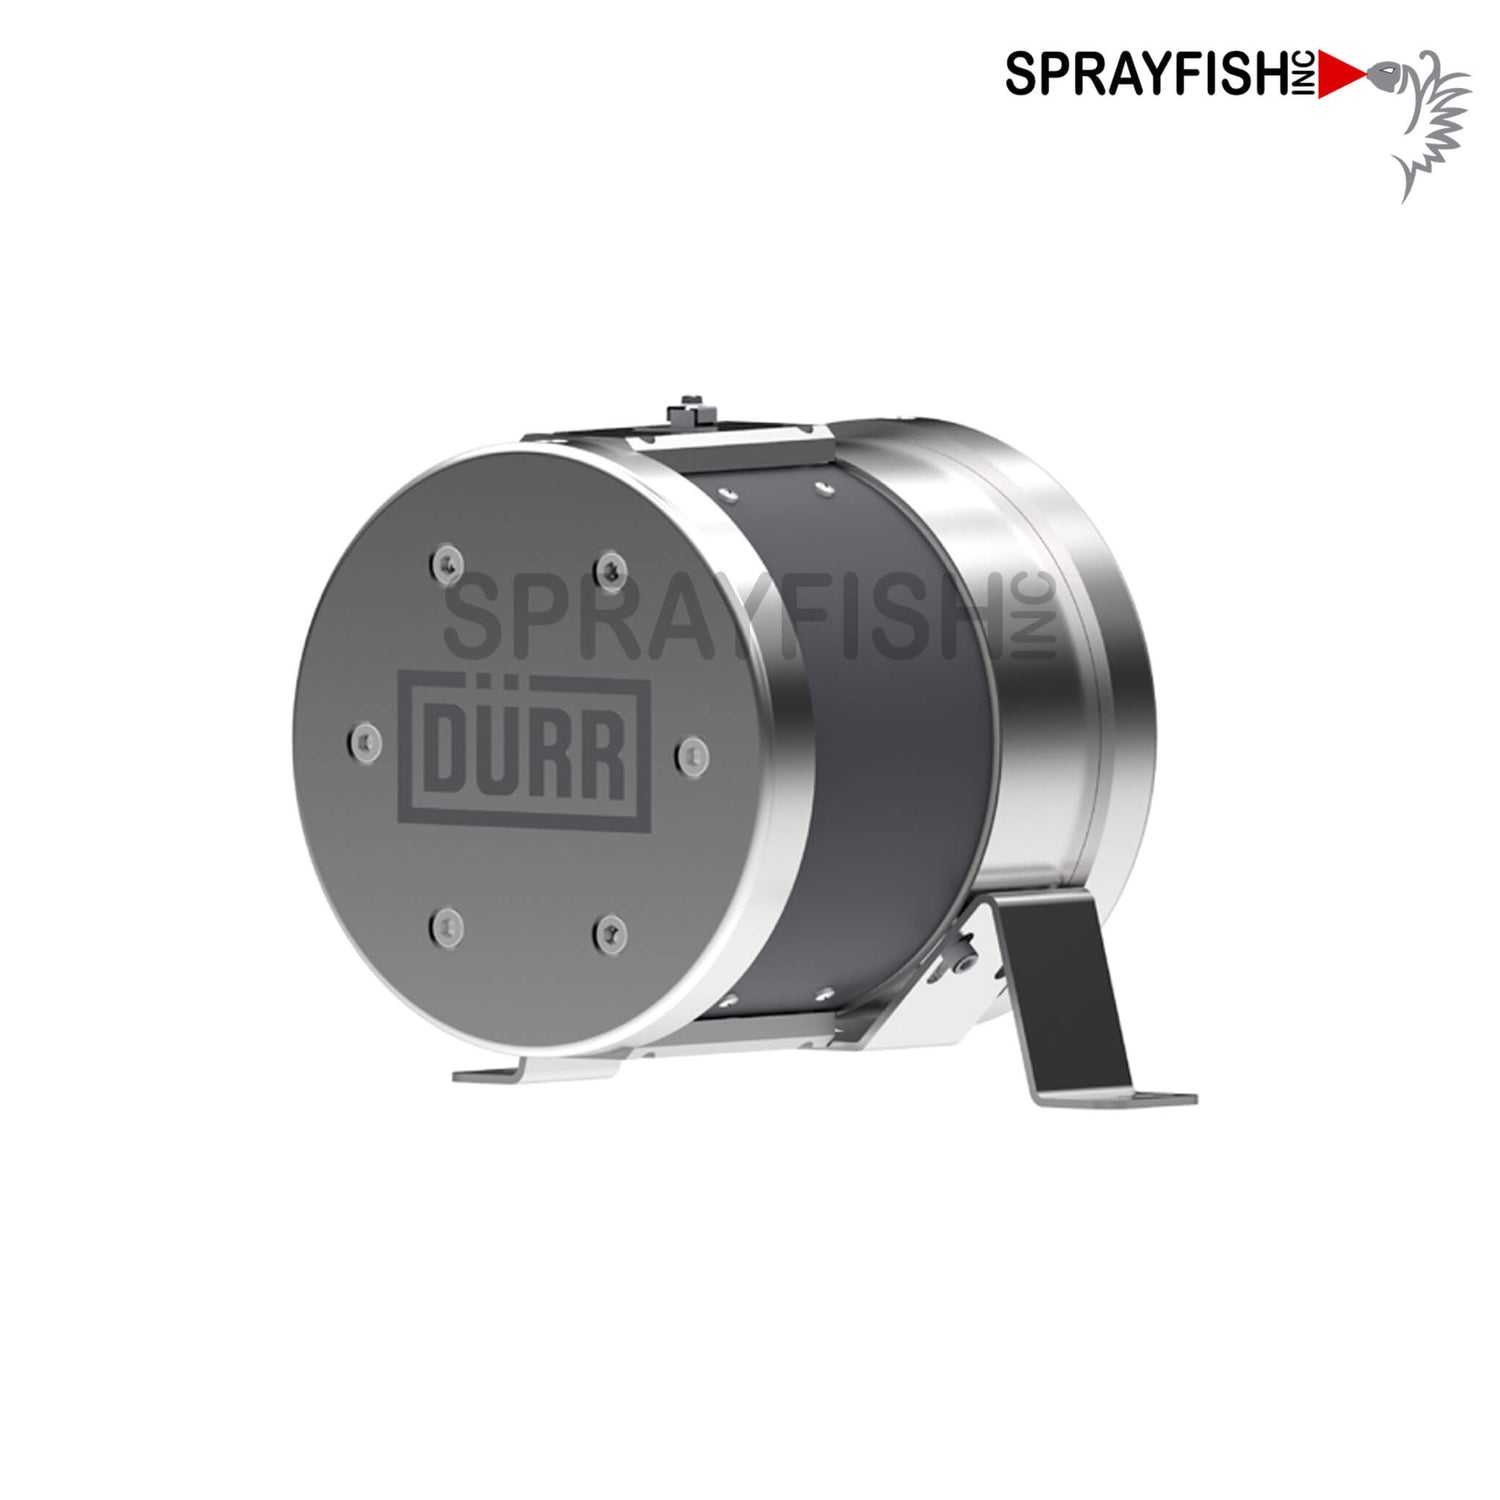 Durr EcoPump 3:1 Double Diaphragm Stainless Pump System